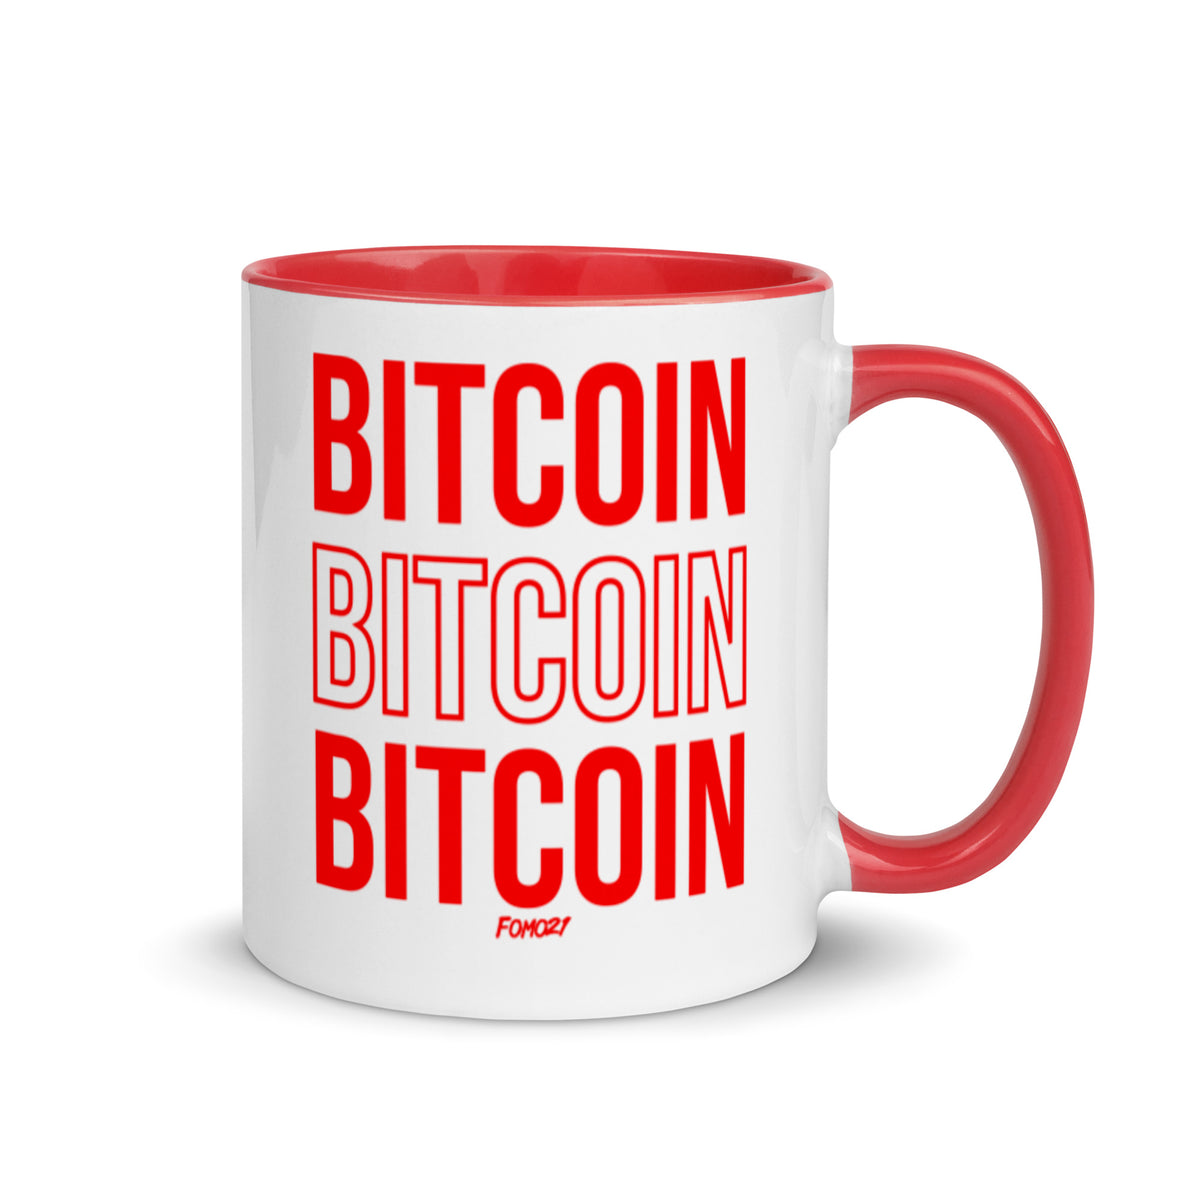 Bitcoin Bitcoin Bitcoin Coffee Mug - fomo21